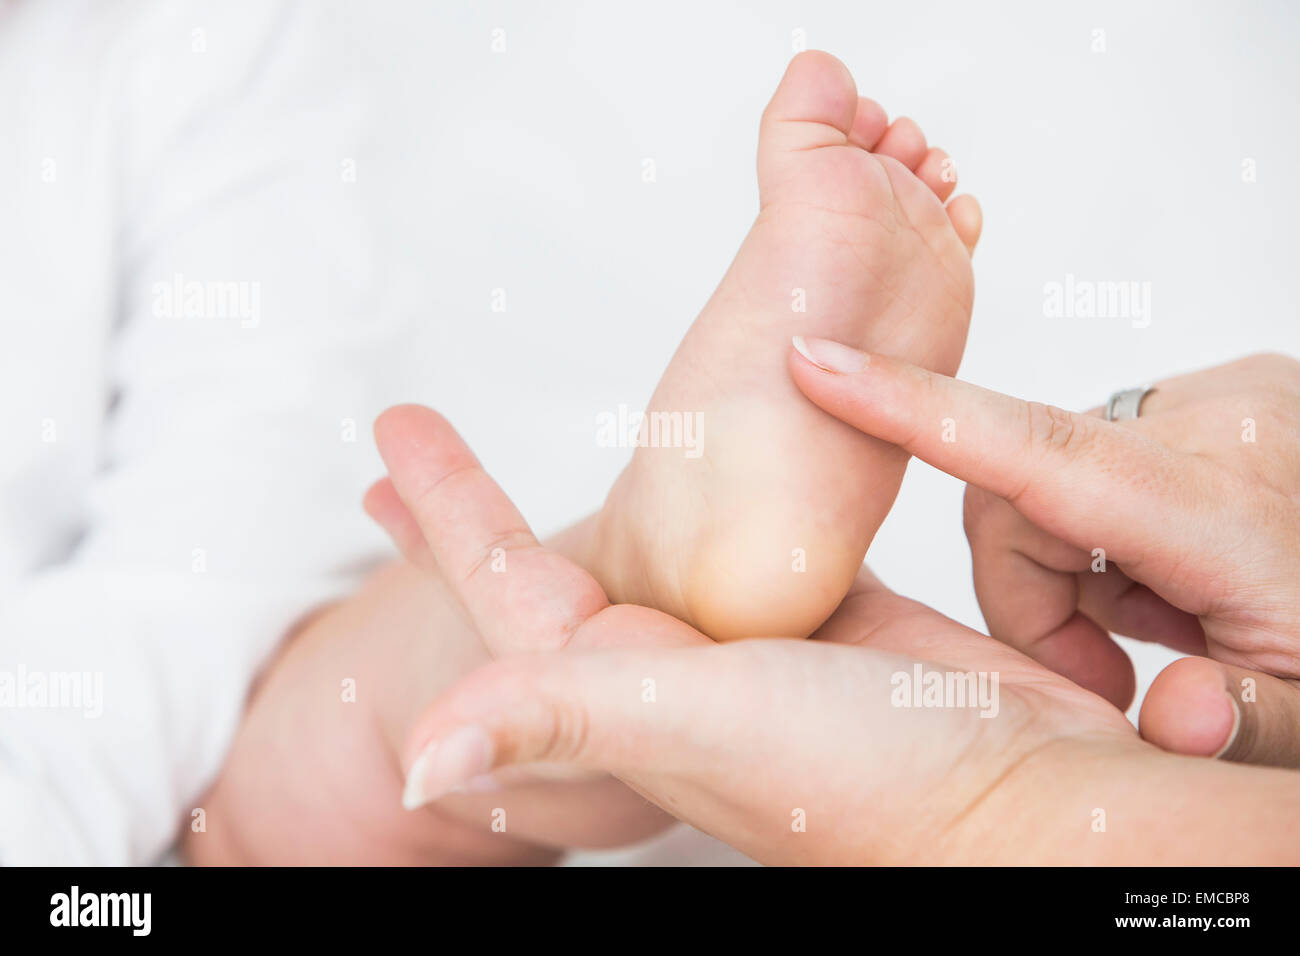 La mano de la madre cosquillas en la planta del pie del bebé. Foto de stock